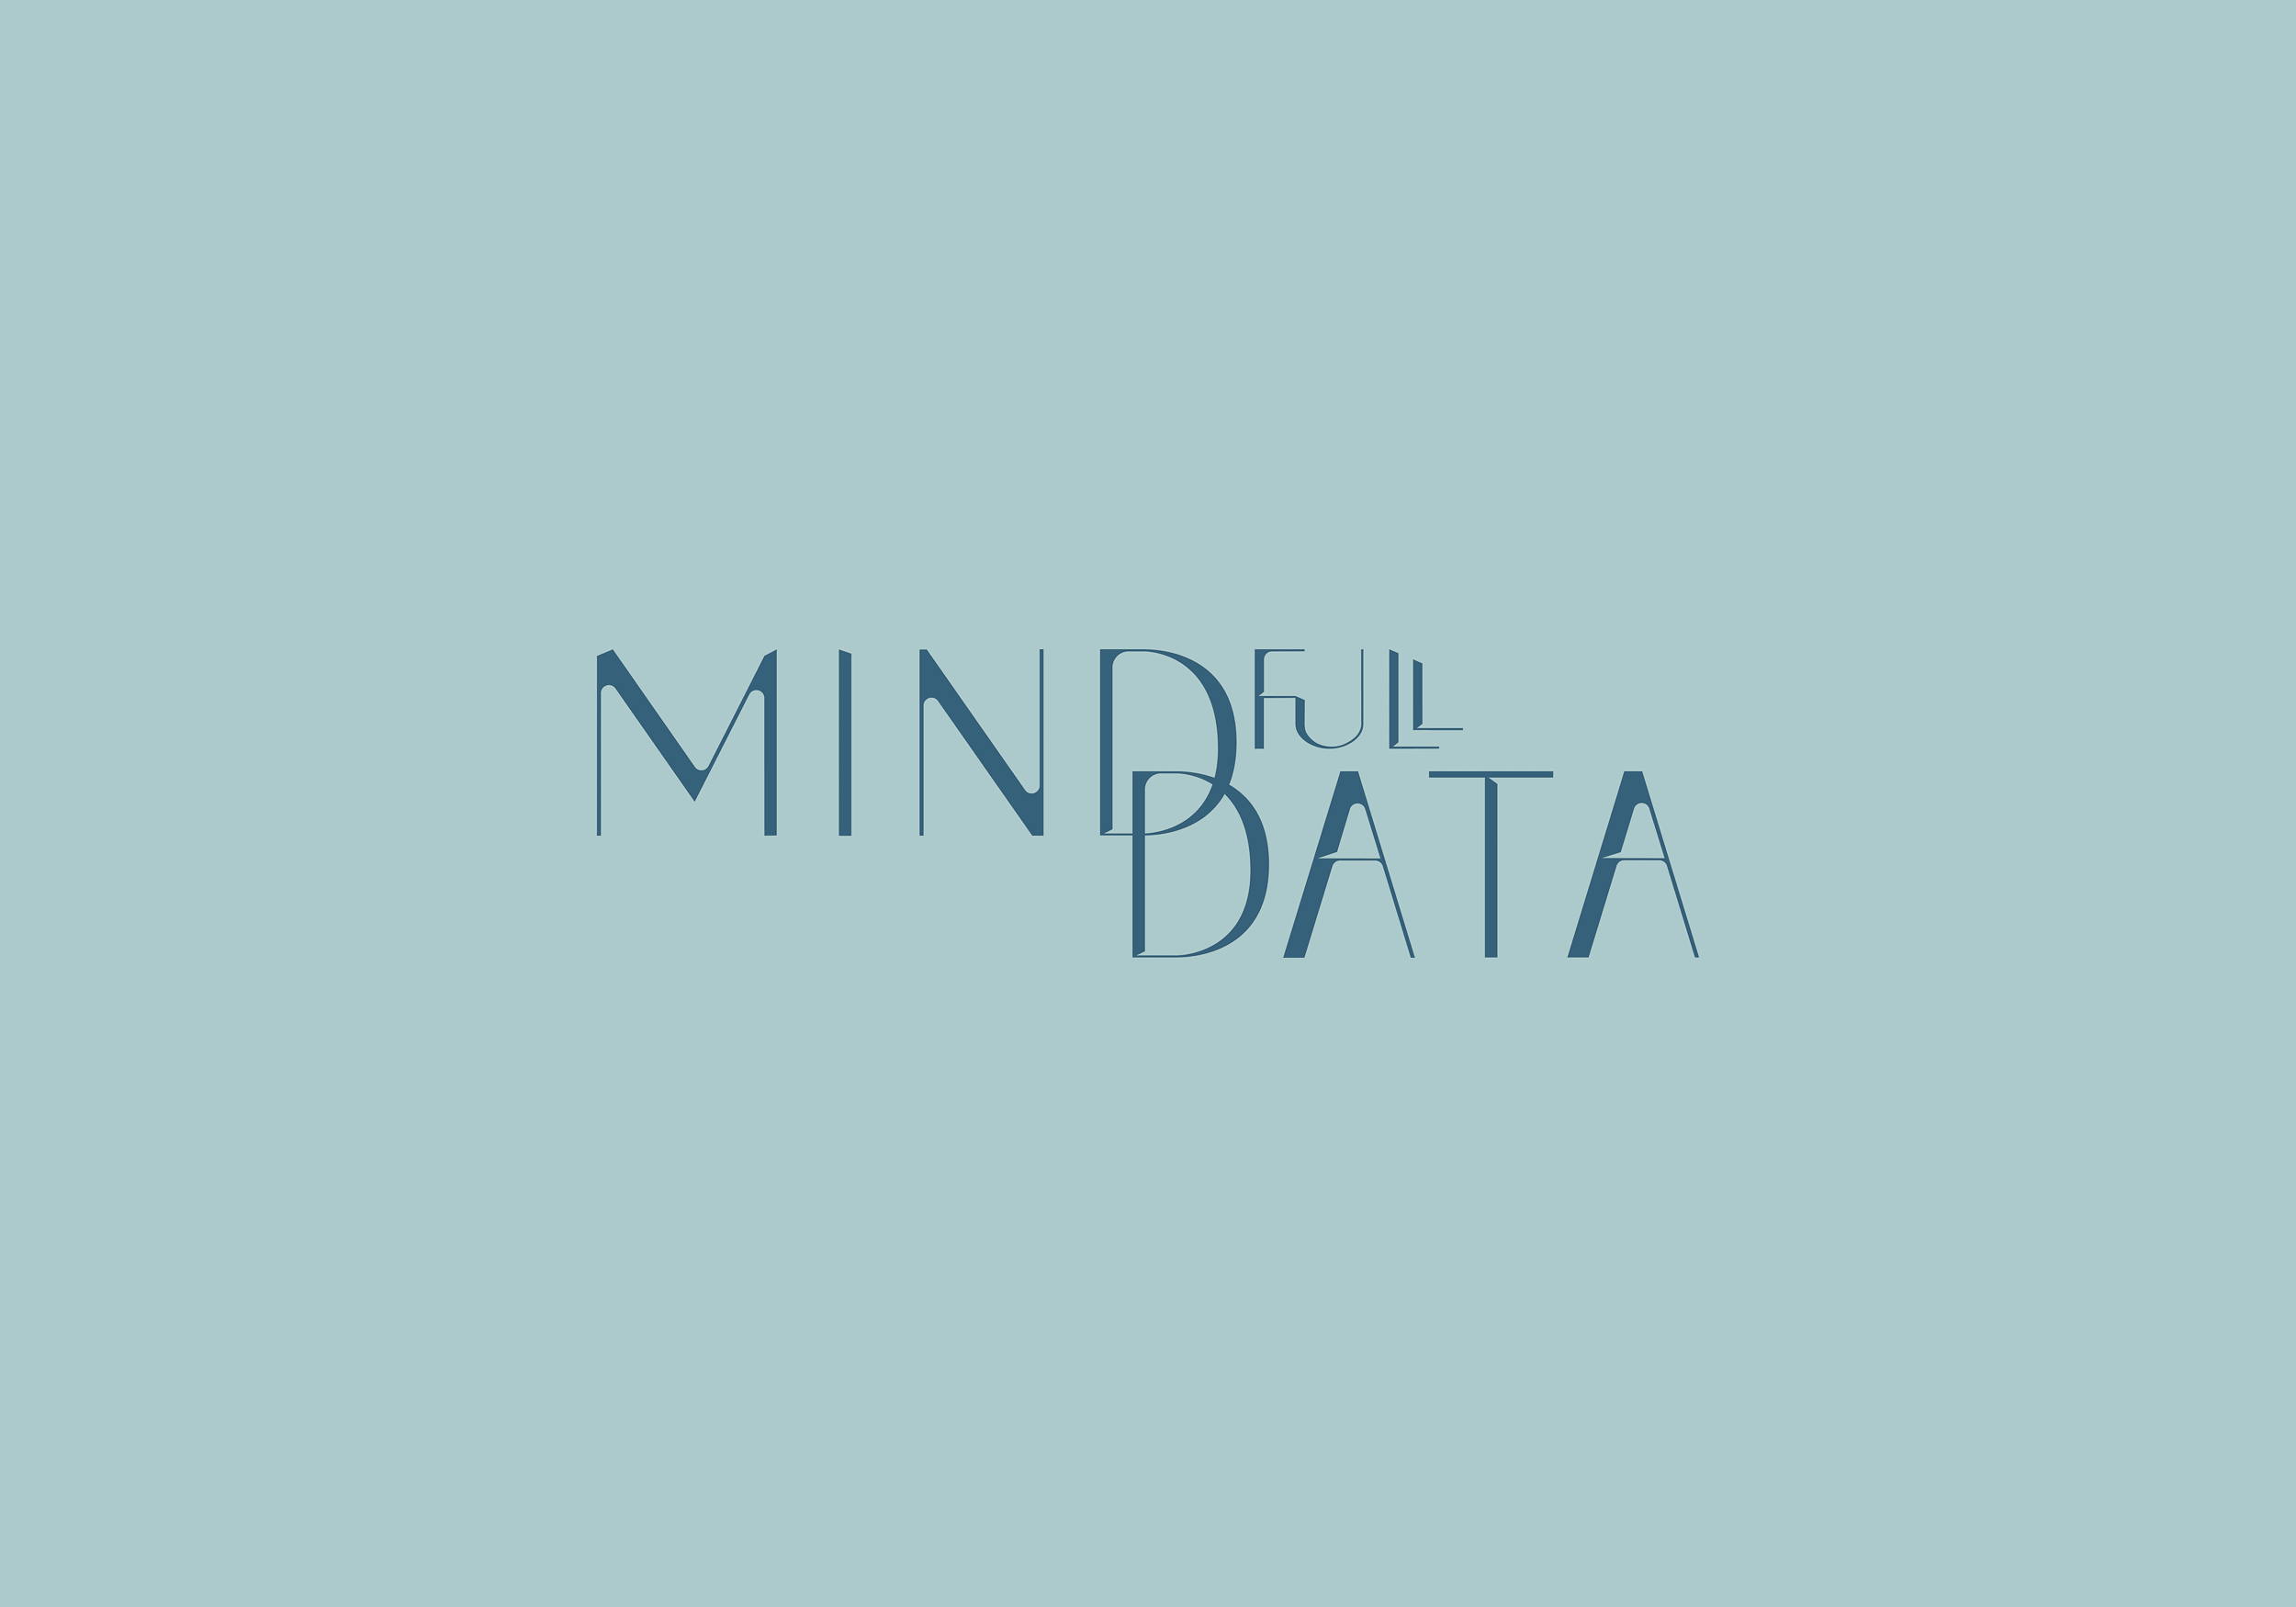 Das Logo von MINDfull DATA, mit dem Brand Design der Firma